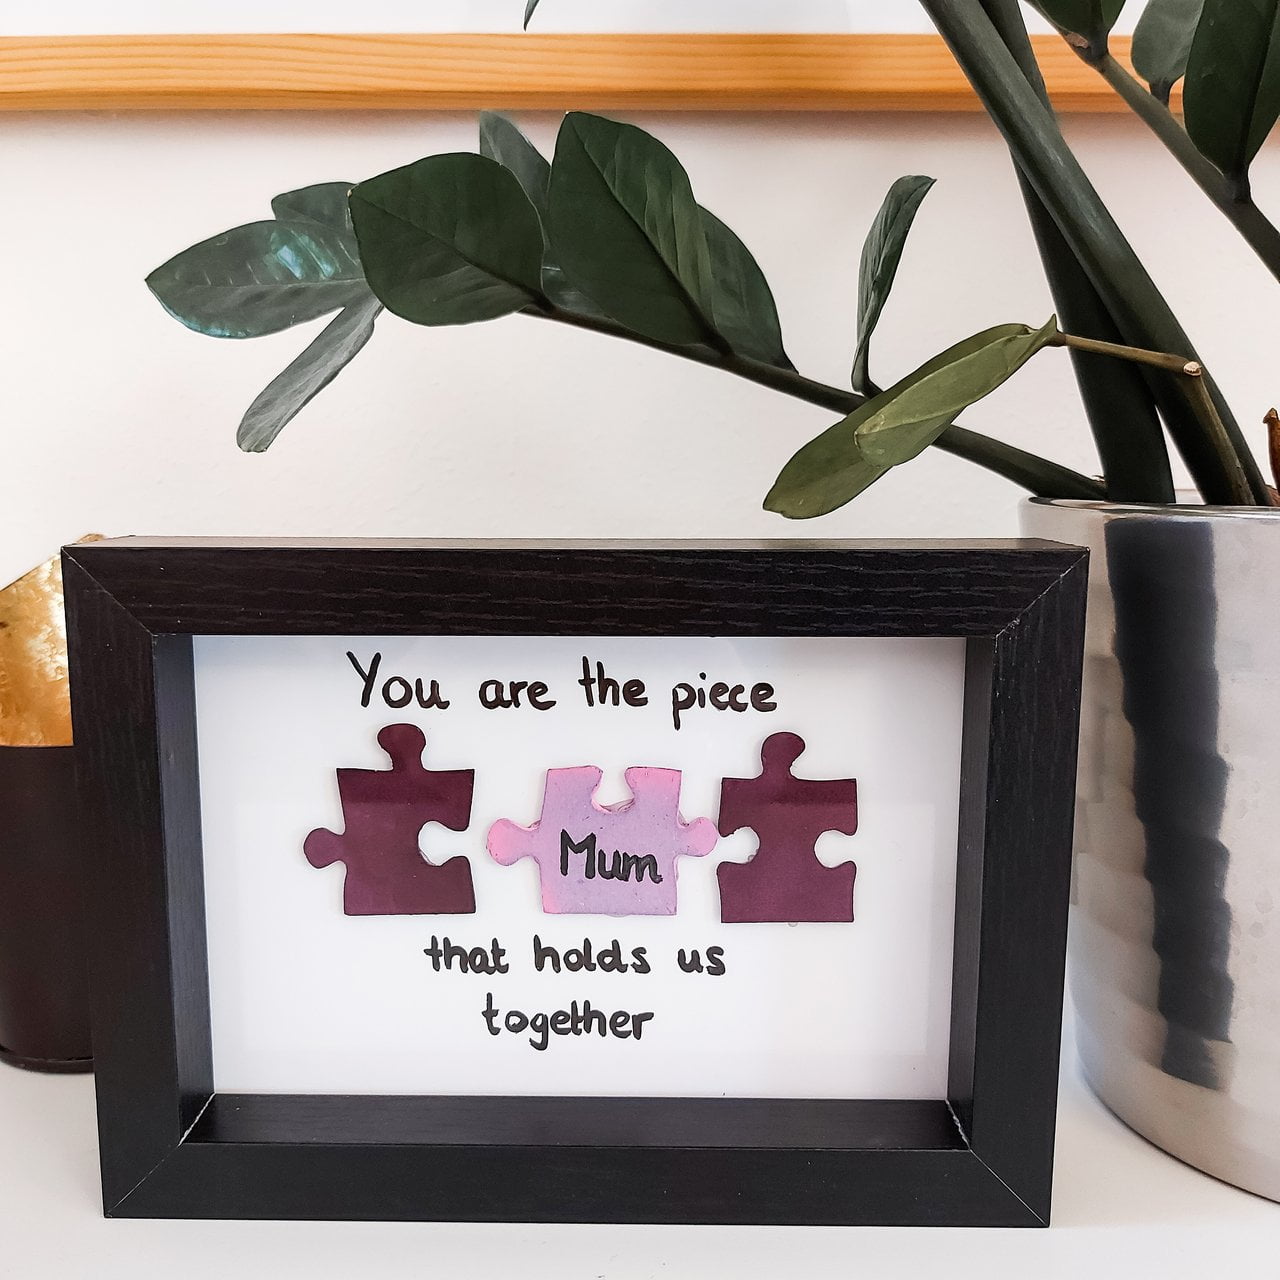 Ein Fotopuzzle mal anders - einzelne, bunt gestaltete Puzzleteilchen symbolisieren die Familie